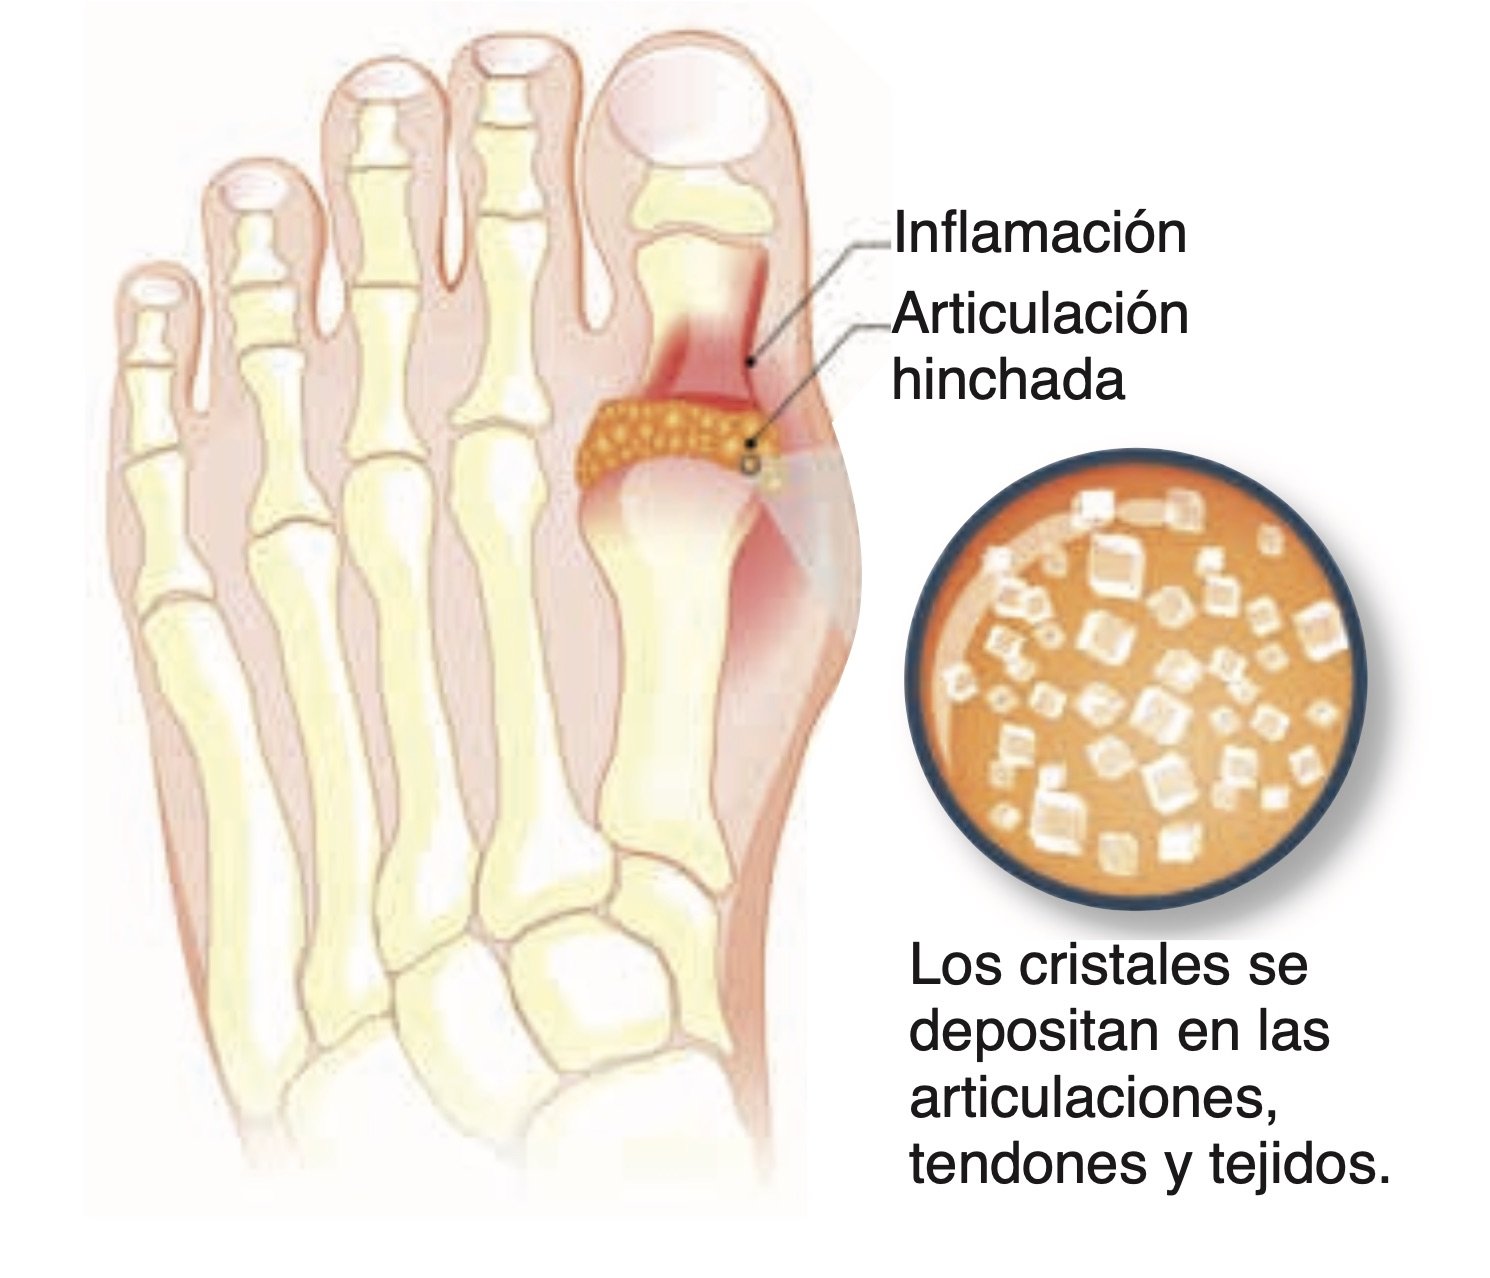 Los ataques de gota. El dedo gordo del pie suele ser la zona más afectada y los cristales acostumbran a deformarlo y limitar su movilidad.